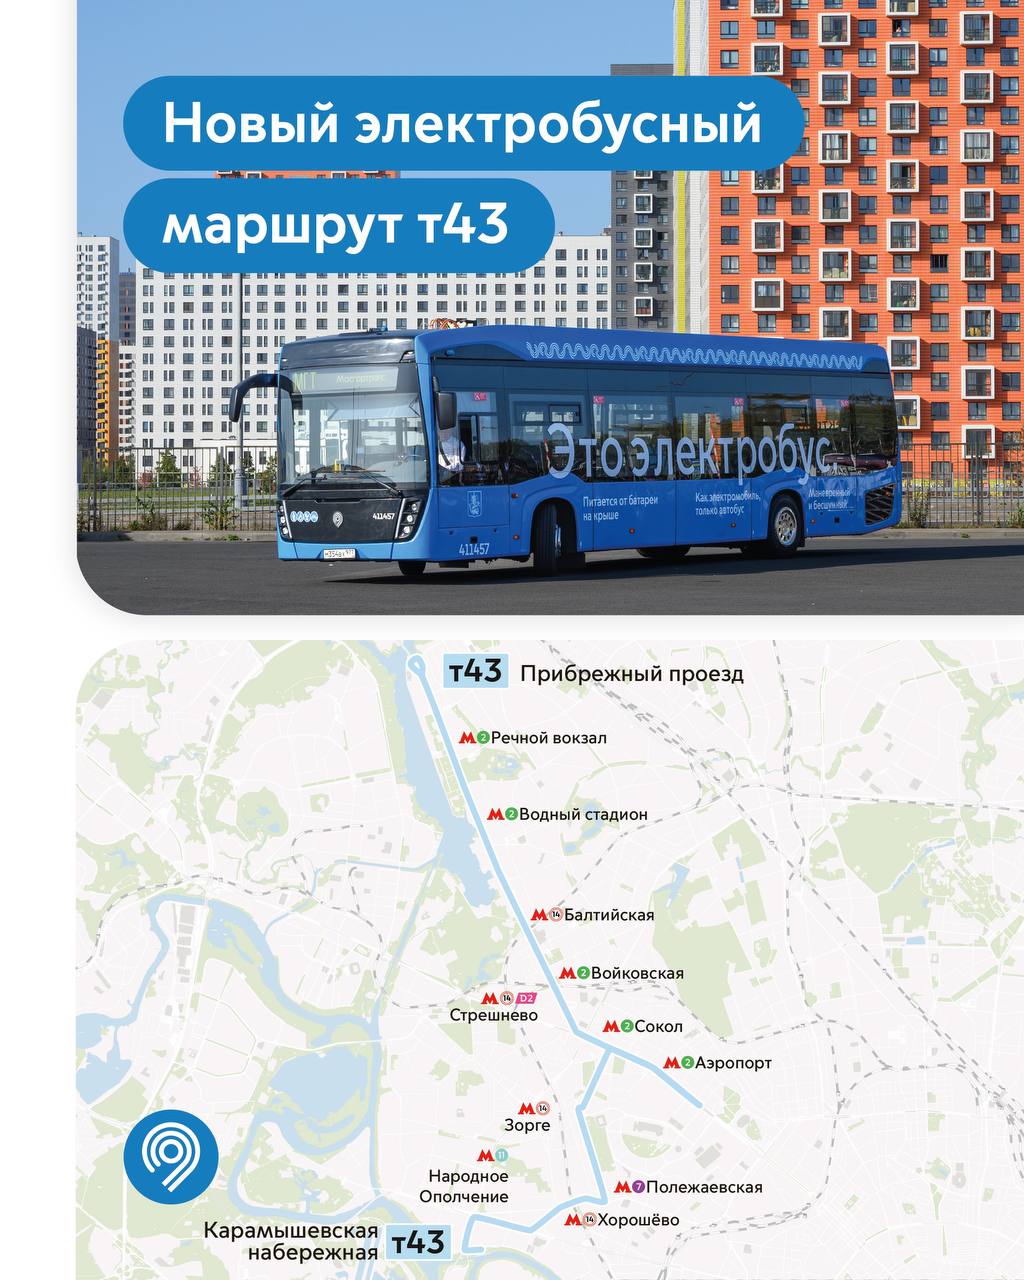 Maskava — Individual Route Maps; Maskava — Maps of Autonomous Electric Bus Lines